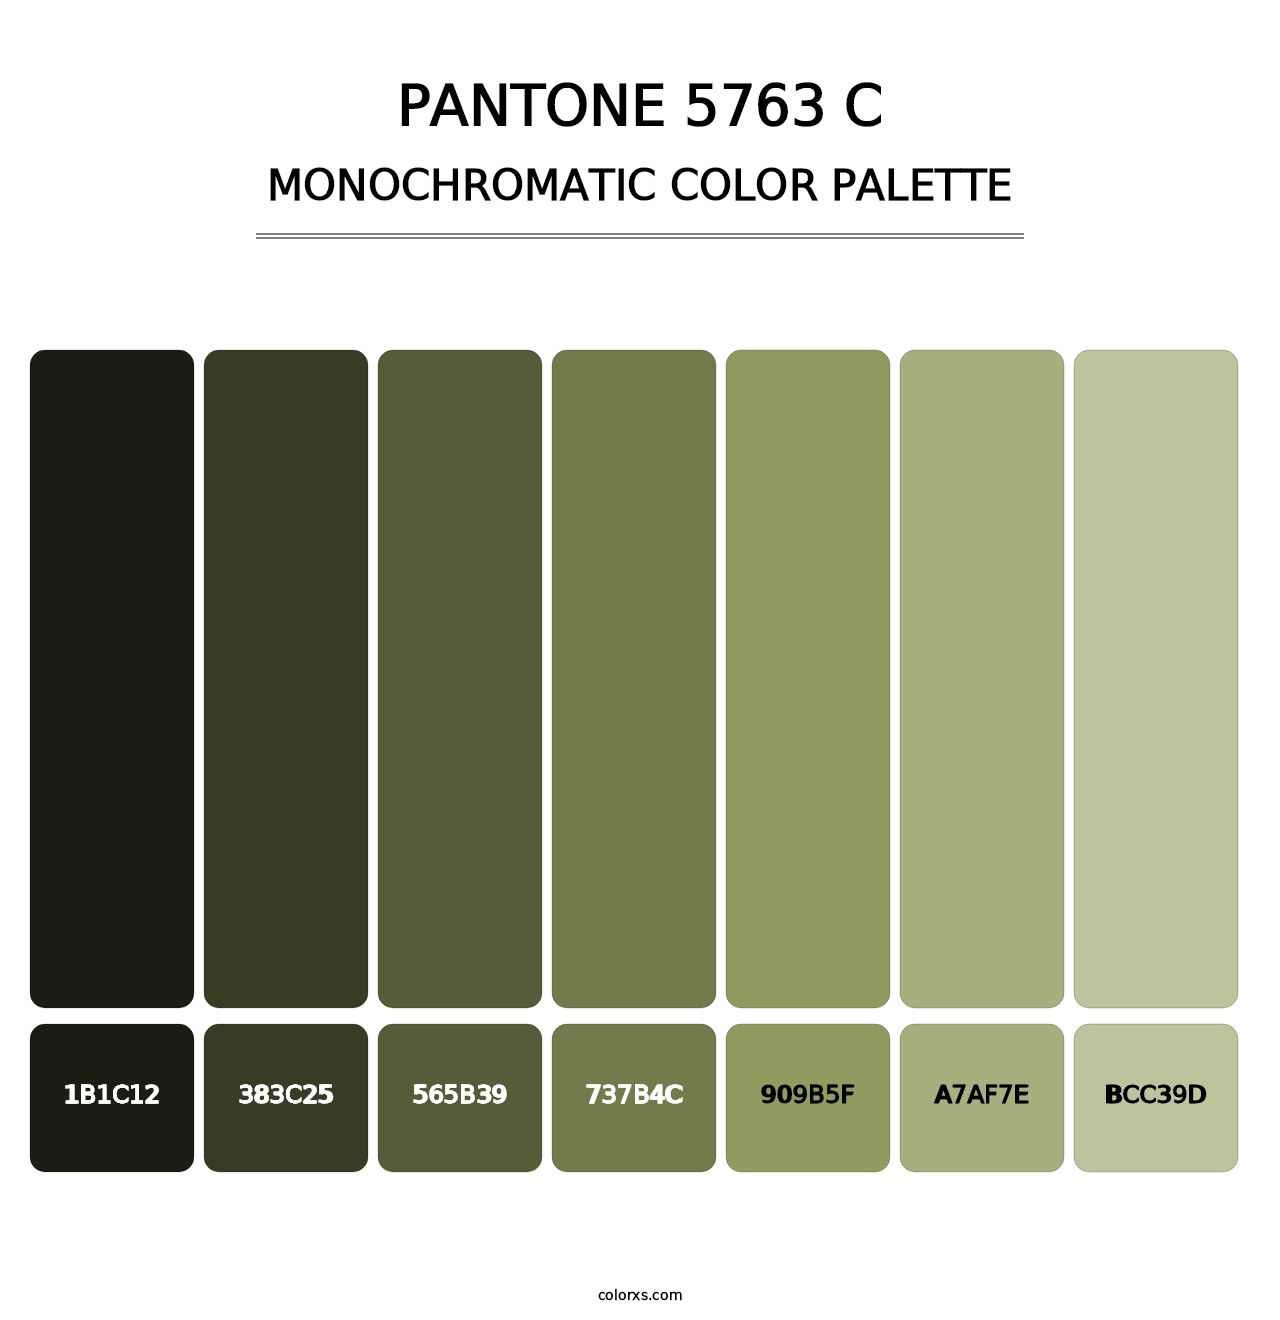 PANTONE 5763 C - Monochromatic Color Palette